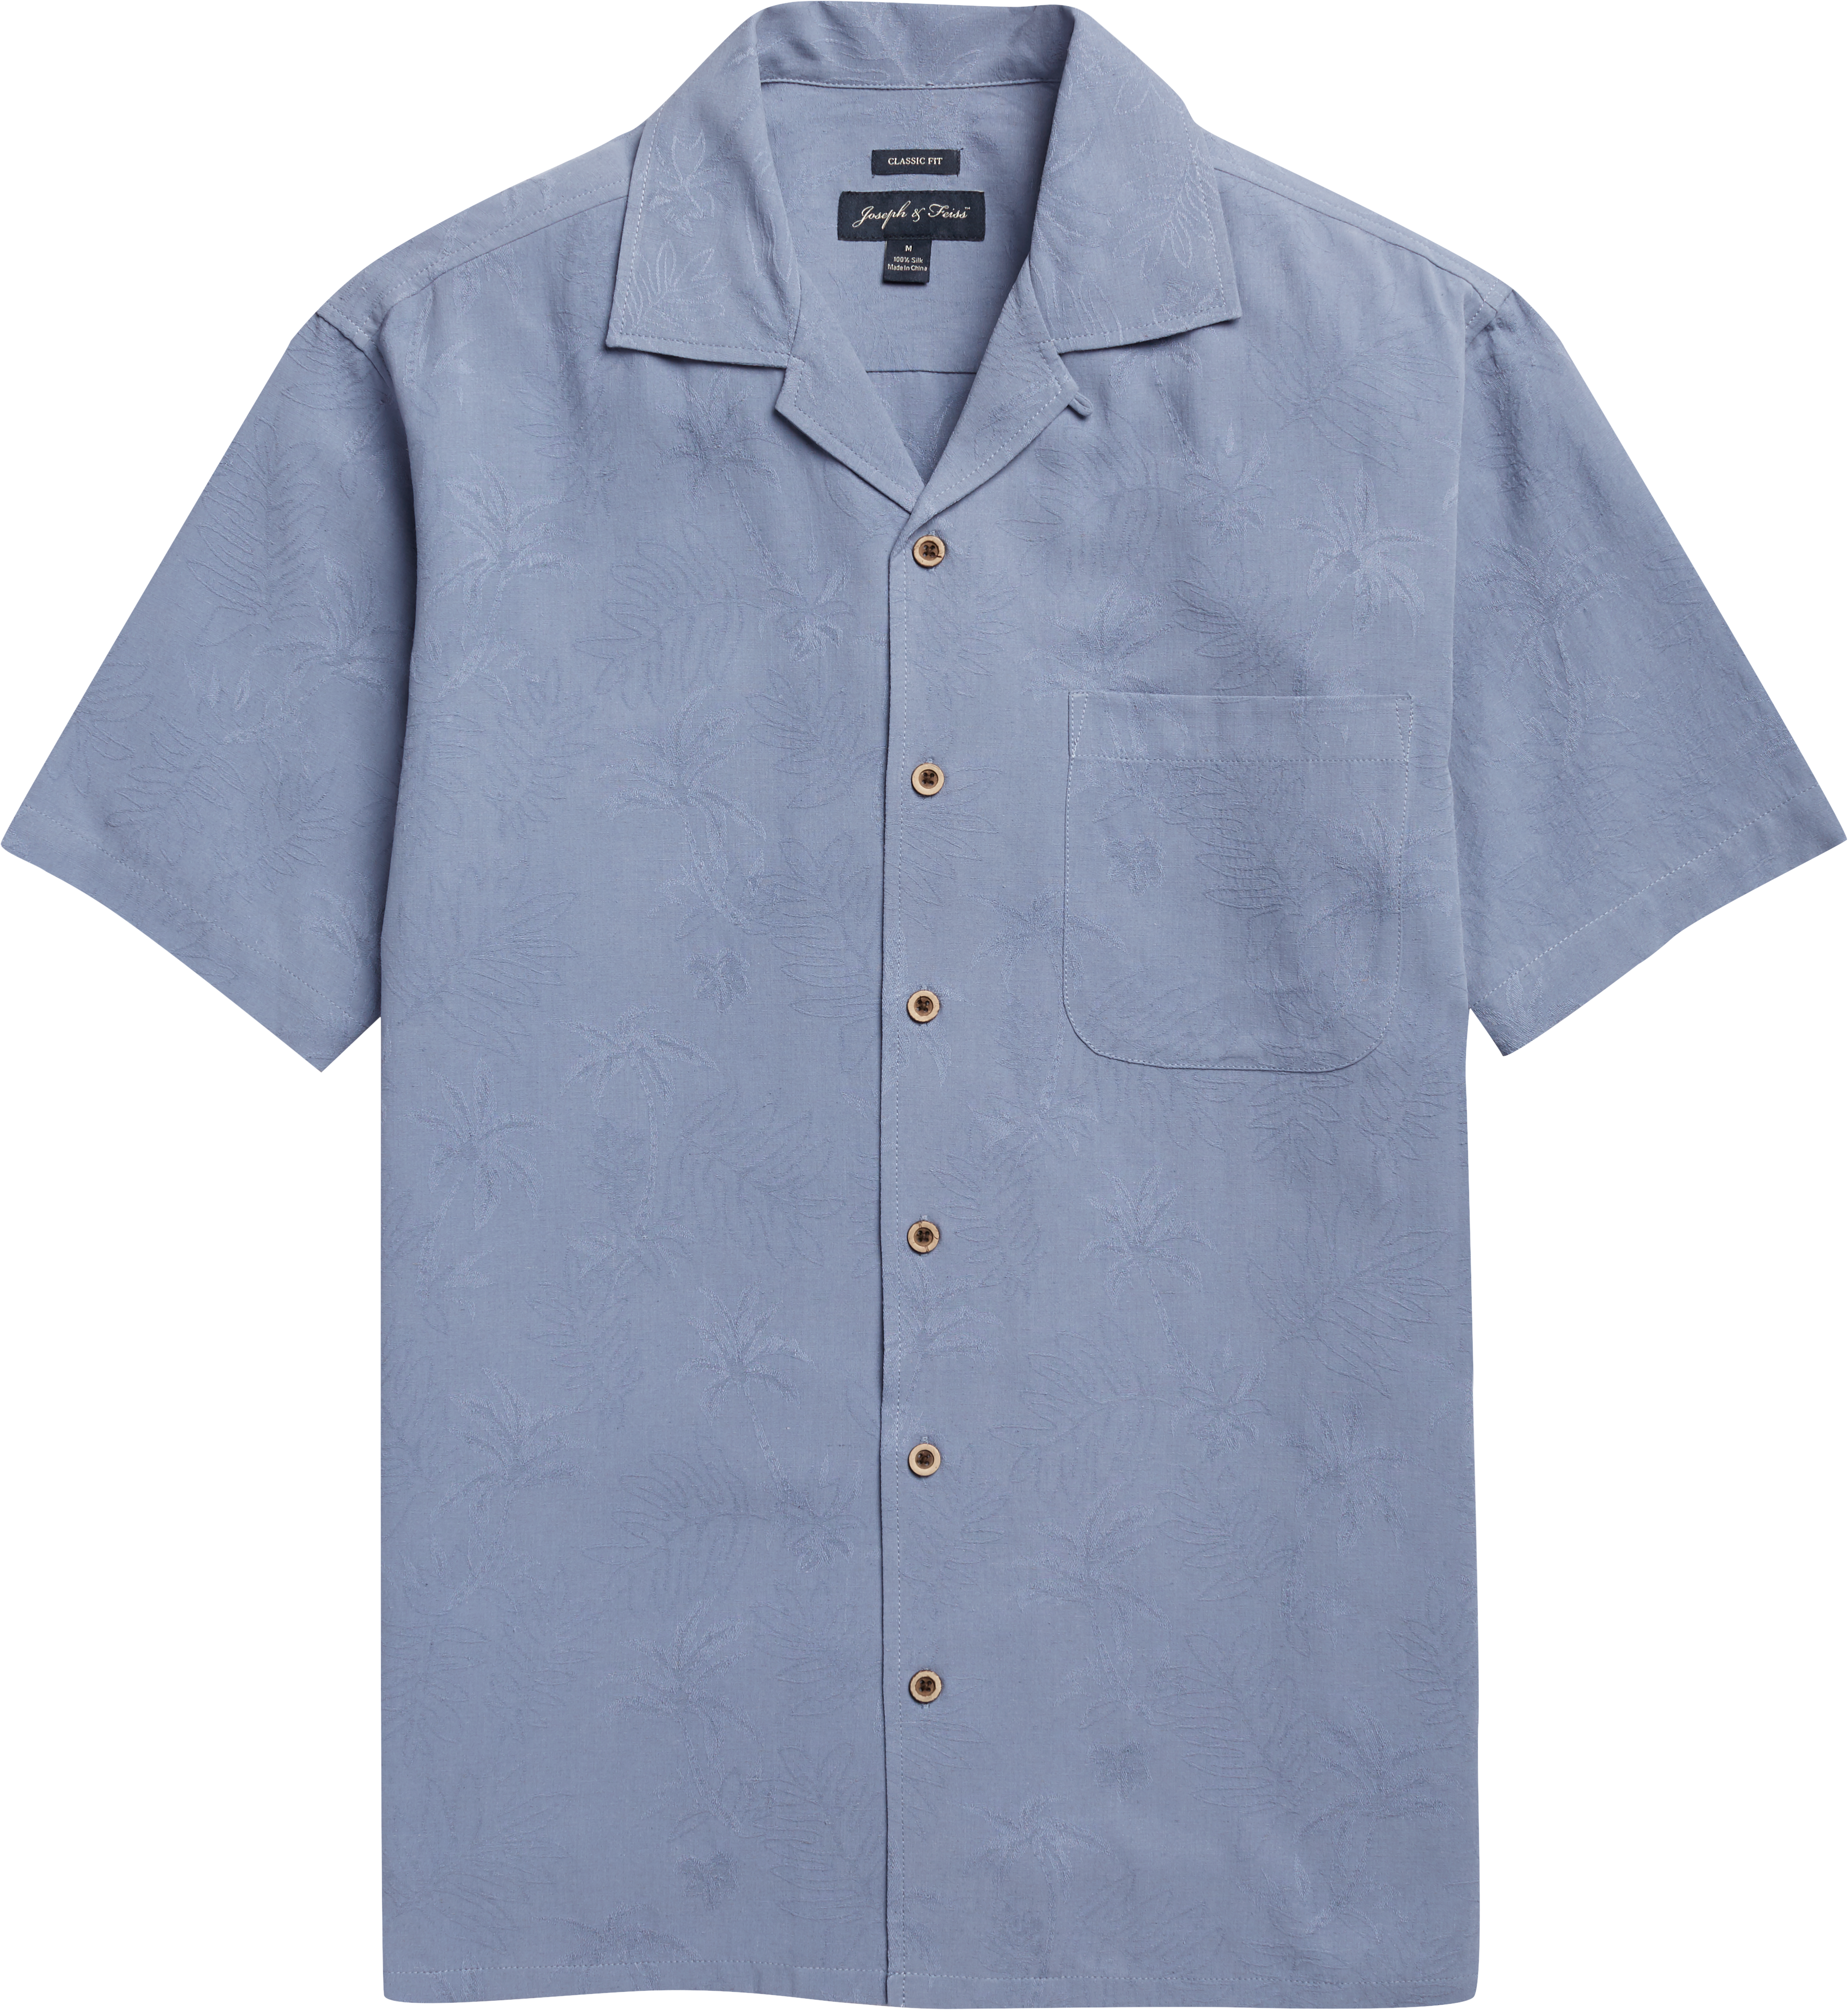 Joseph & Feiss Blue Palm Tree Classic Fit Camp Shirt - Men's Sale | Men ...